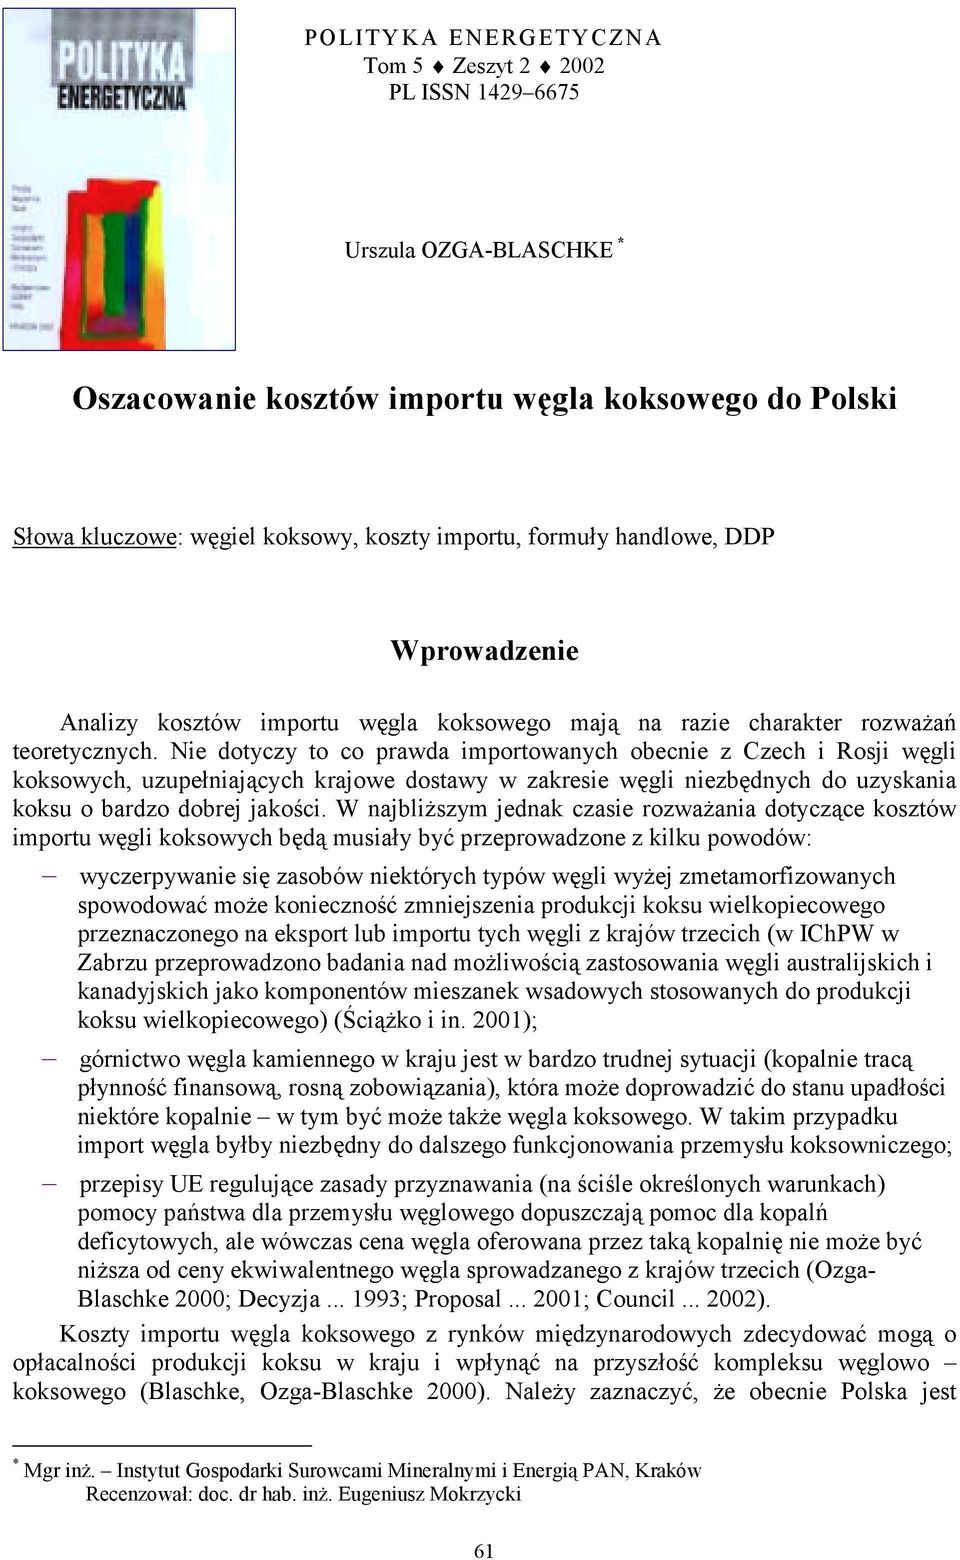 Nie dotyczy to co prawda importowanych obecnie z Czech i Rosji węgli koksowych, uzupełniających krajowe dostawy w zakresie węgli niezbędnych do uzyskania koksu o bardzo dobrej jakości.